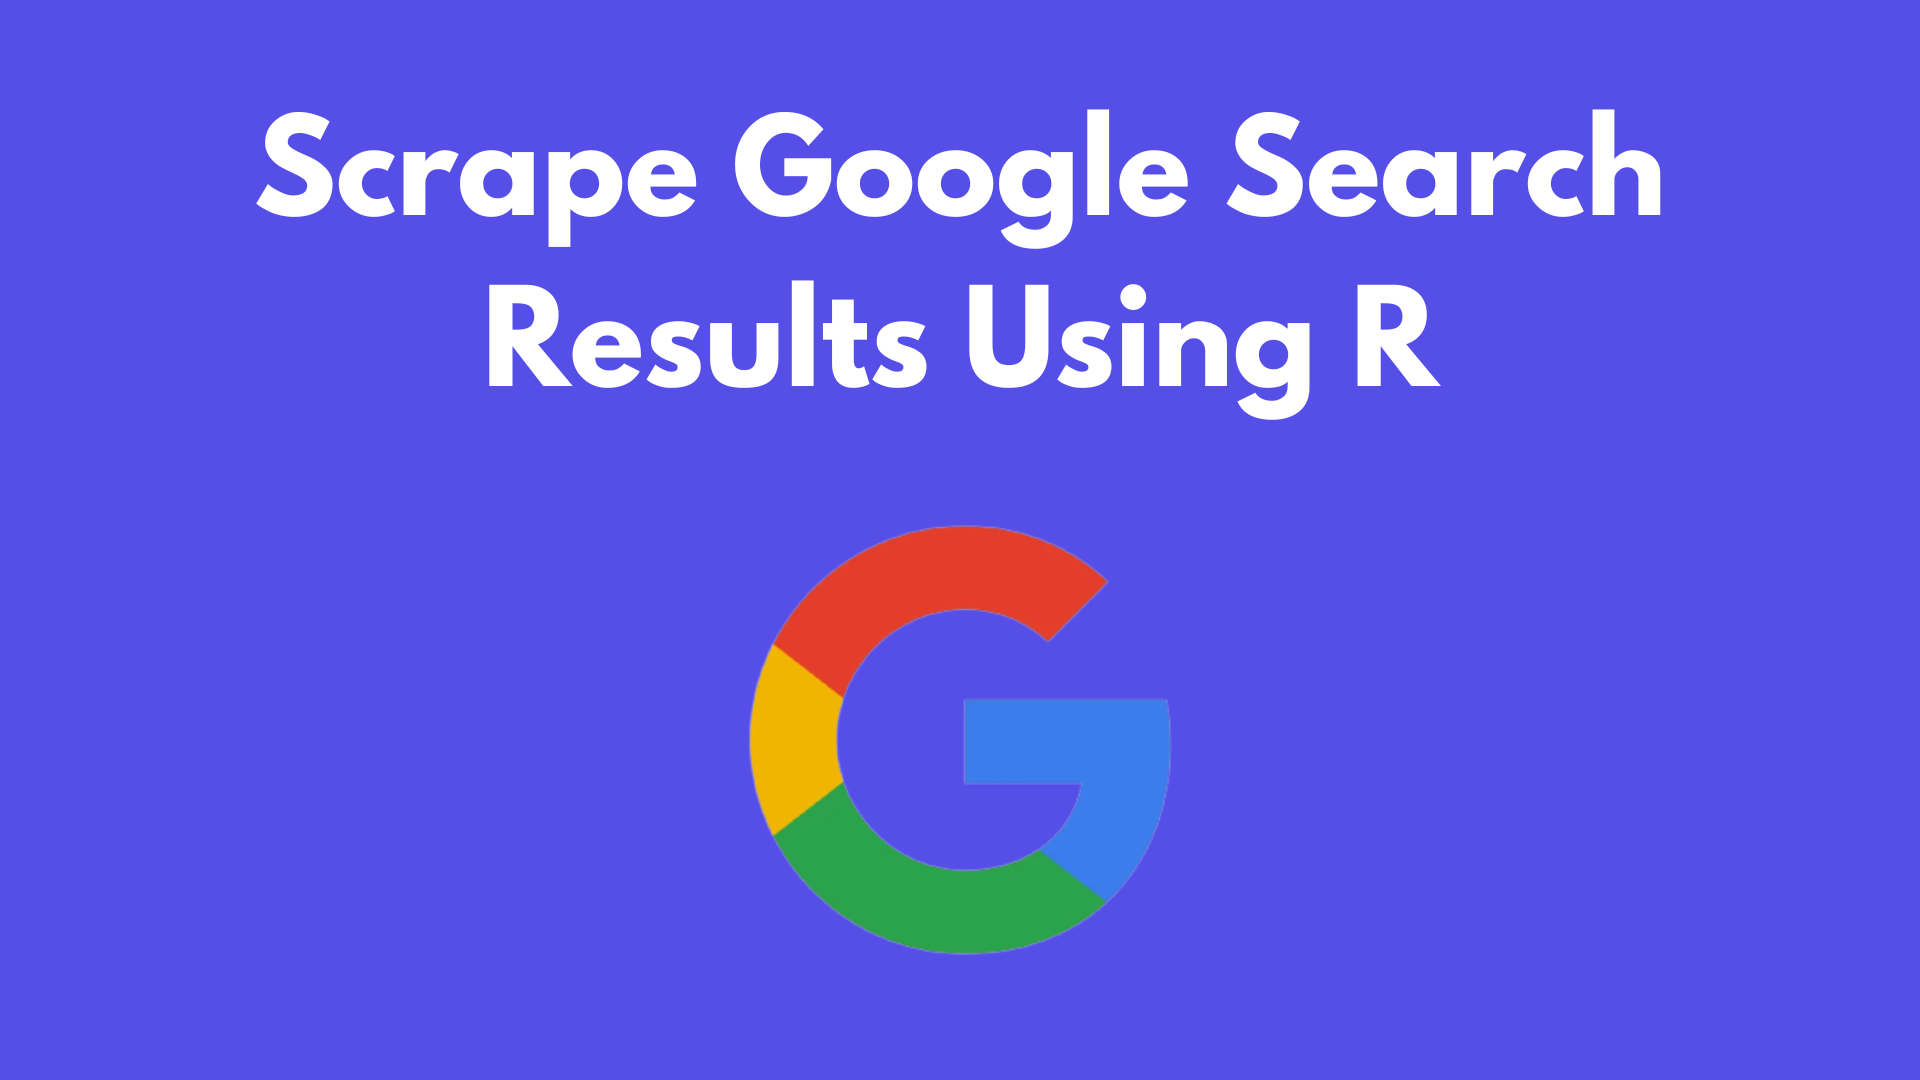 Scrape Google Search Results Using R